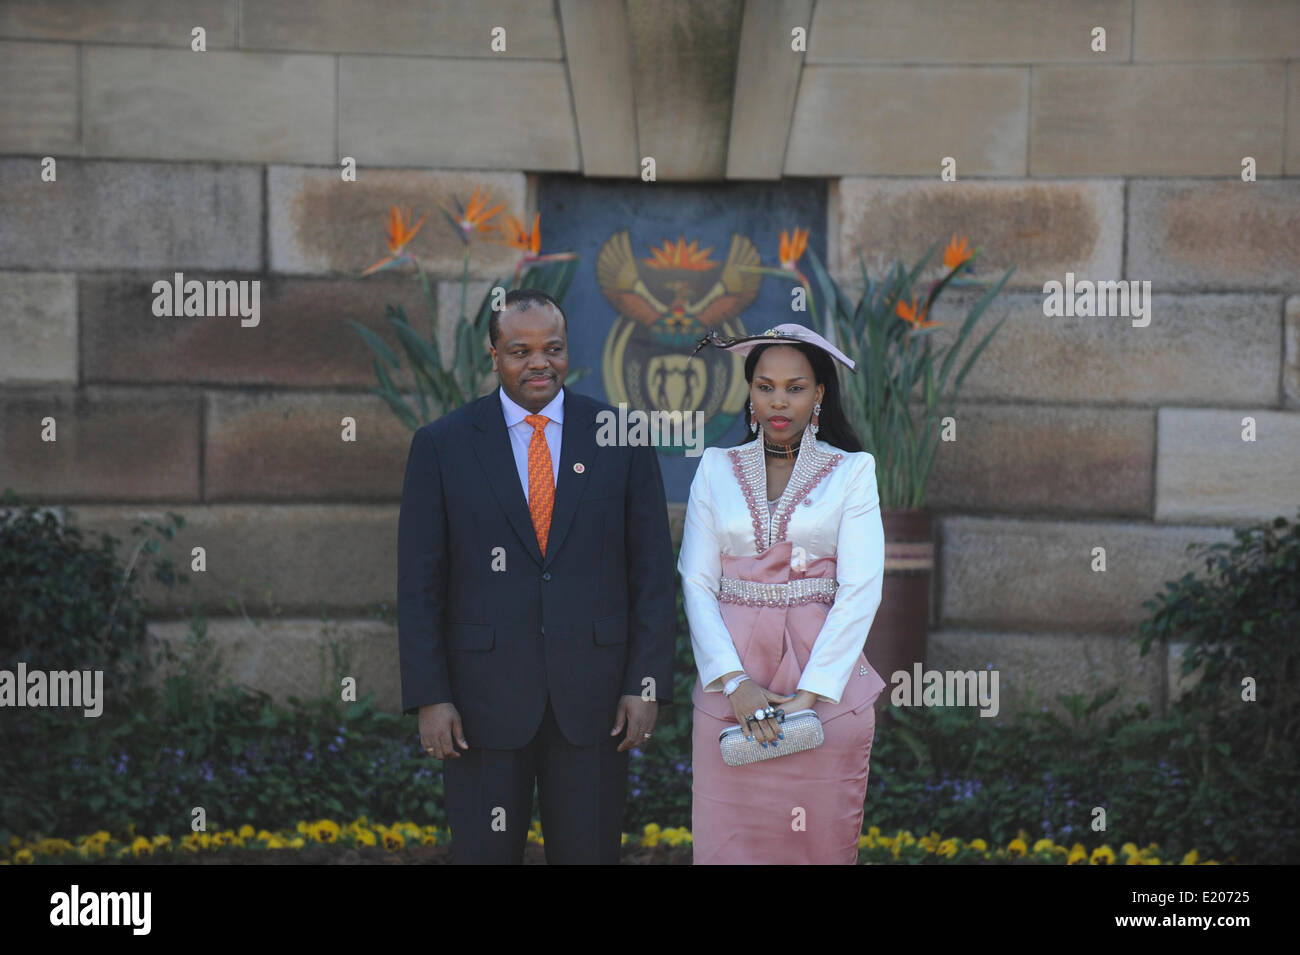 La investidura del Presidente Zuma en Union Buildings, Pretoria. 2014. El rey Mswati de Swazilandia Foto de stock